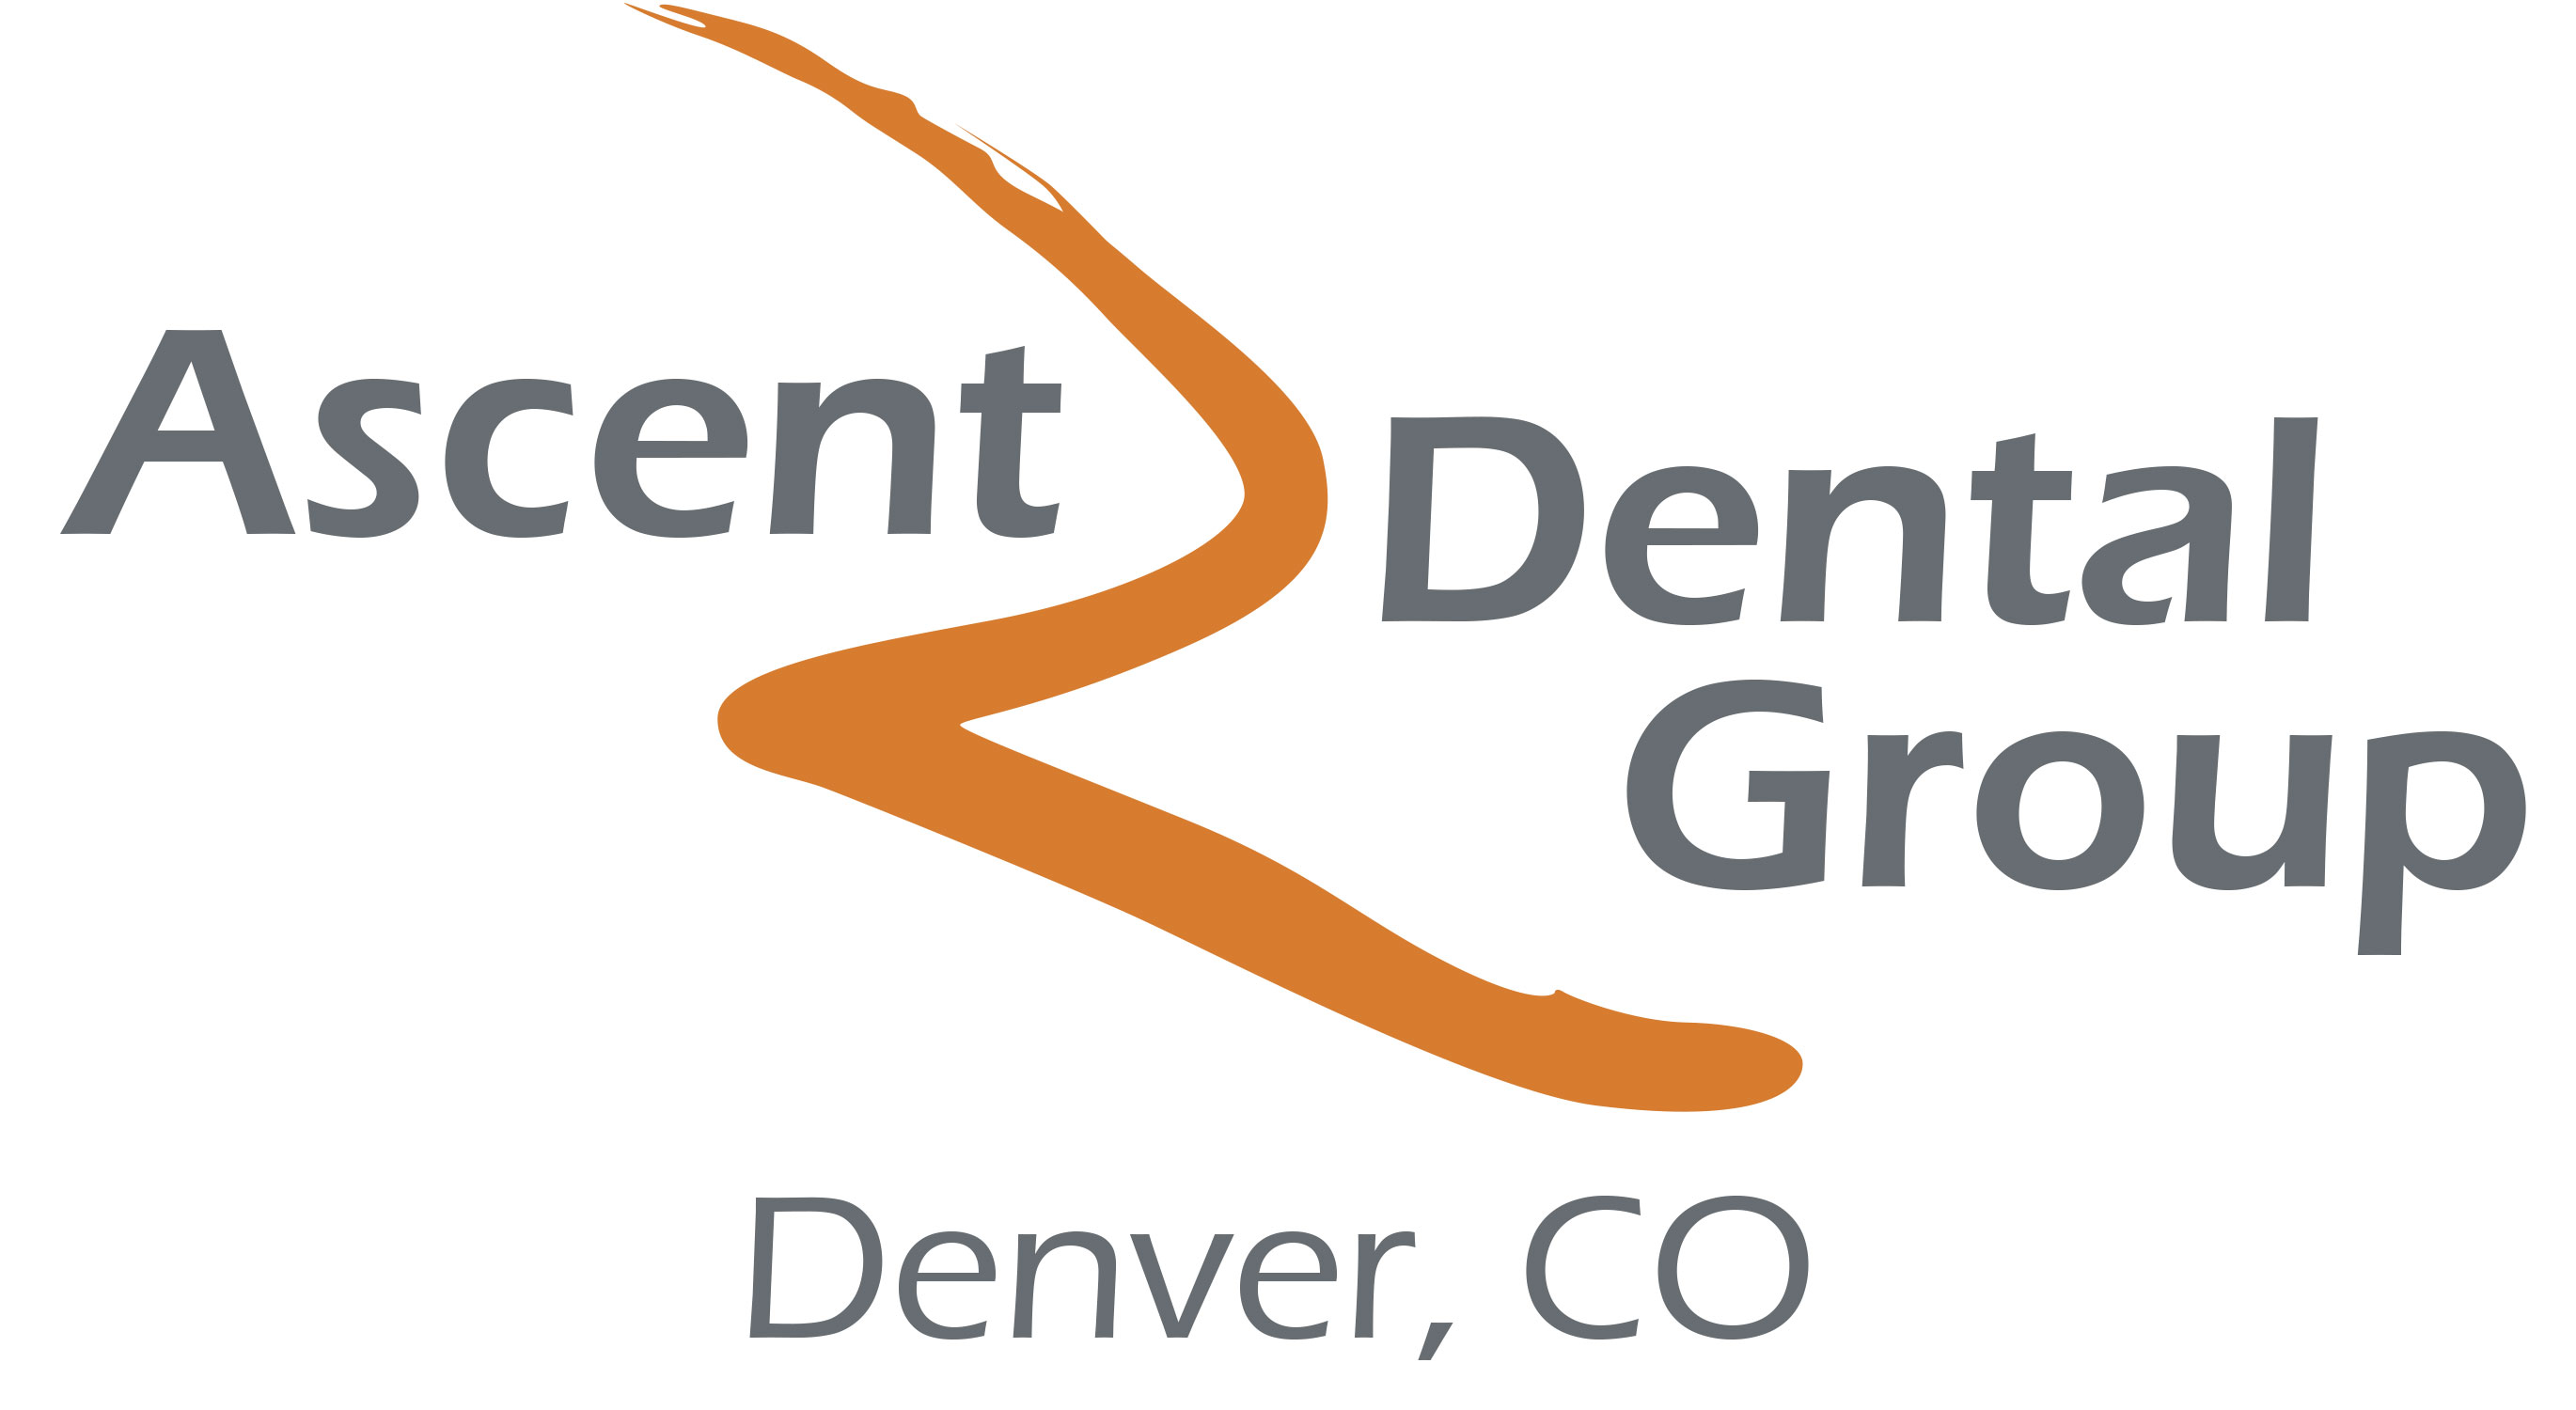 Ascent Dental Group